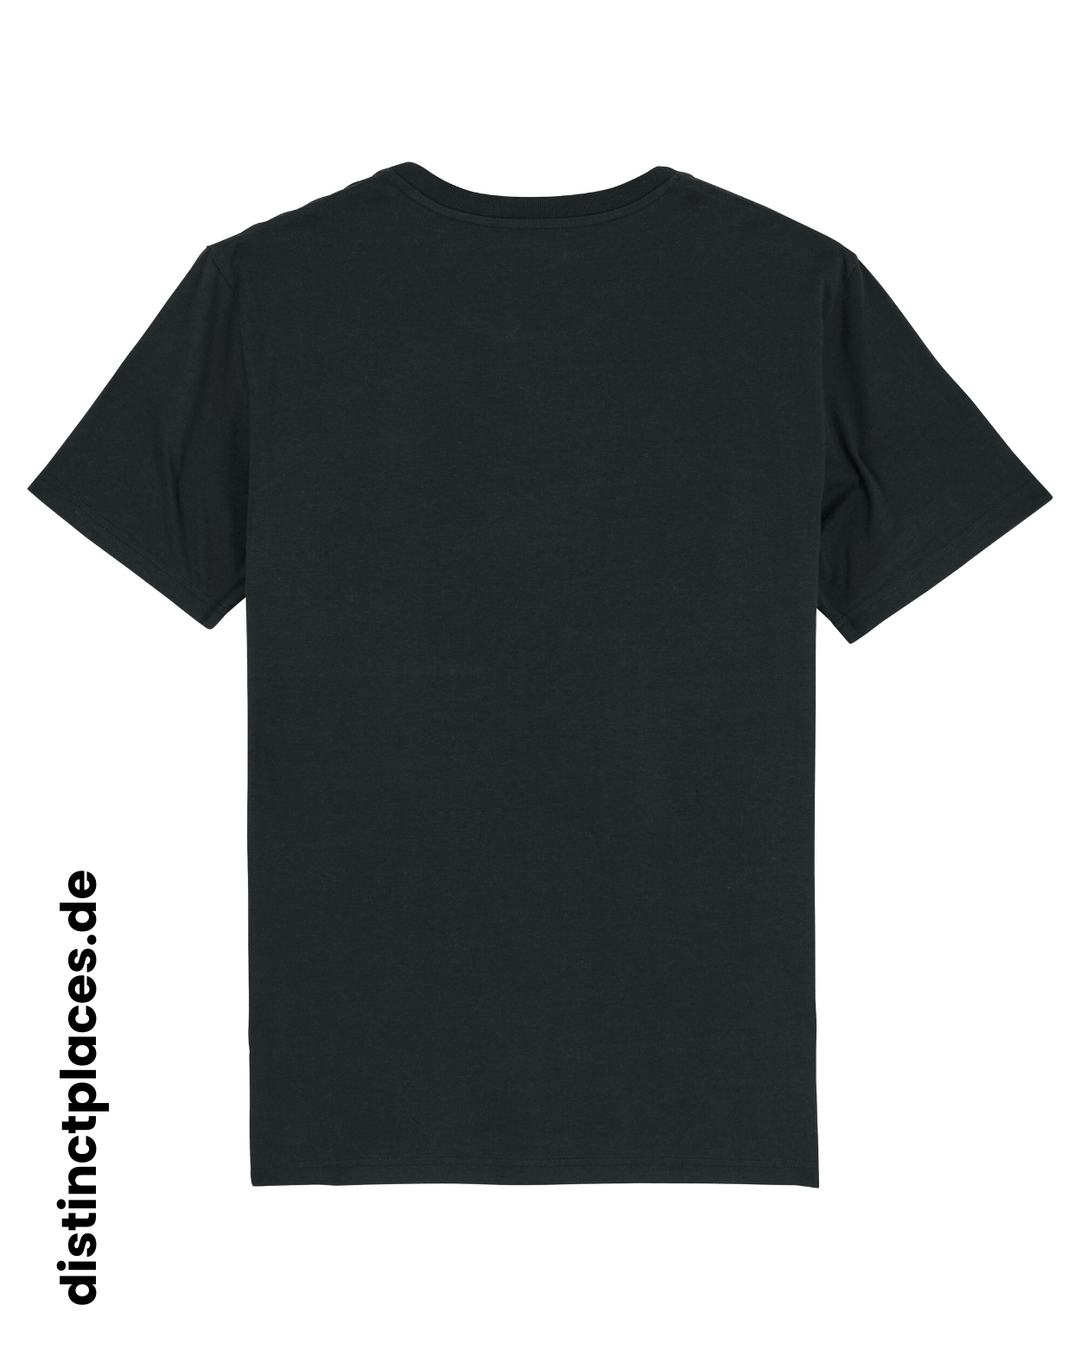 Schwarzes fairtrade, vegan und bio-baumwoll T-Shirt von hinten mit einem minimalistischem weißen Logo, beziehungsweise Wappen und Schriftzug für Frankfurt